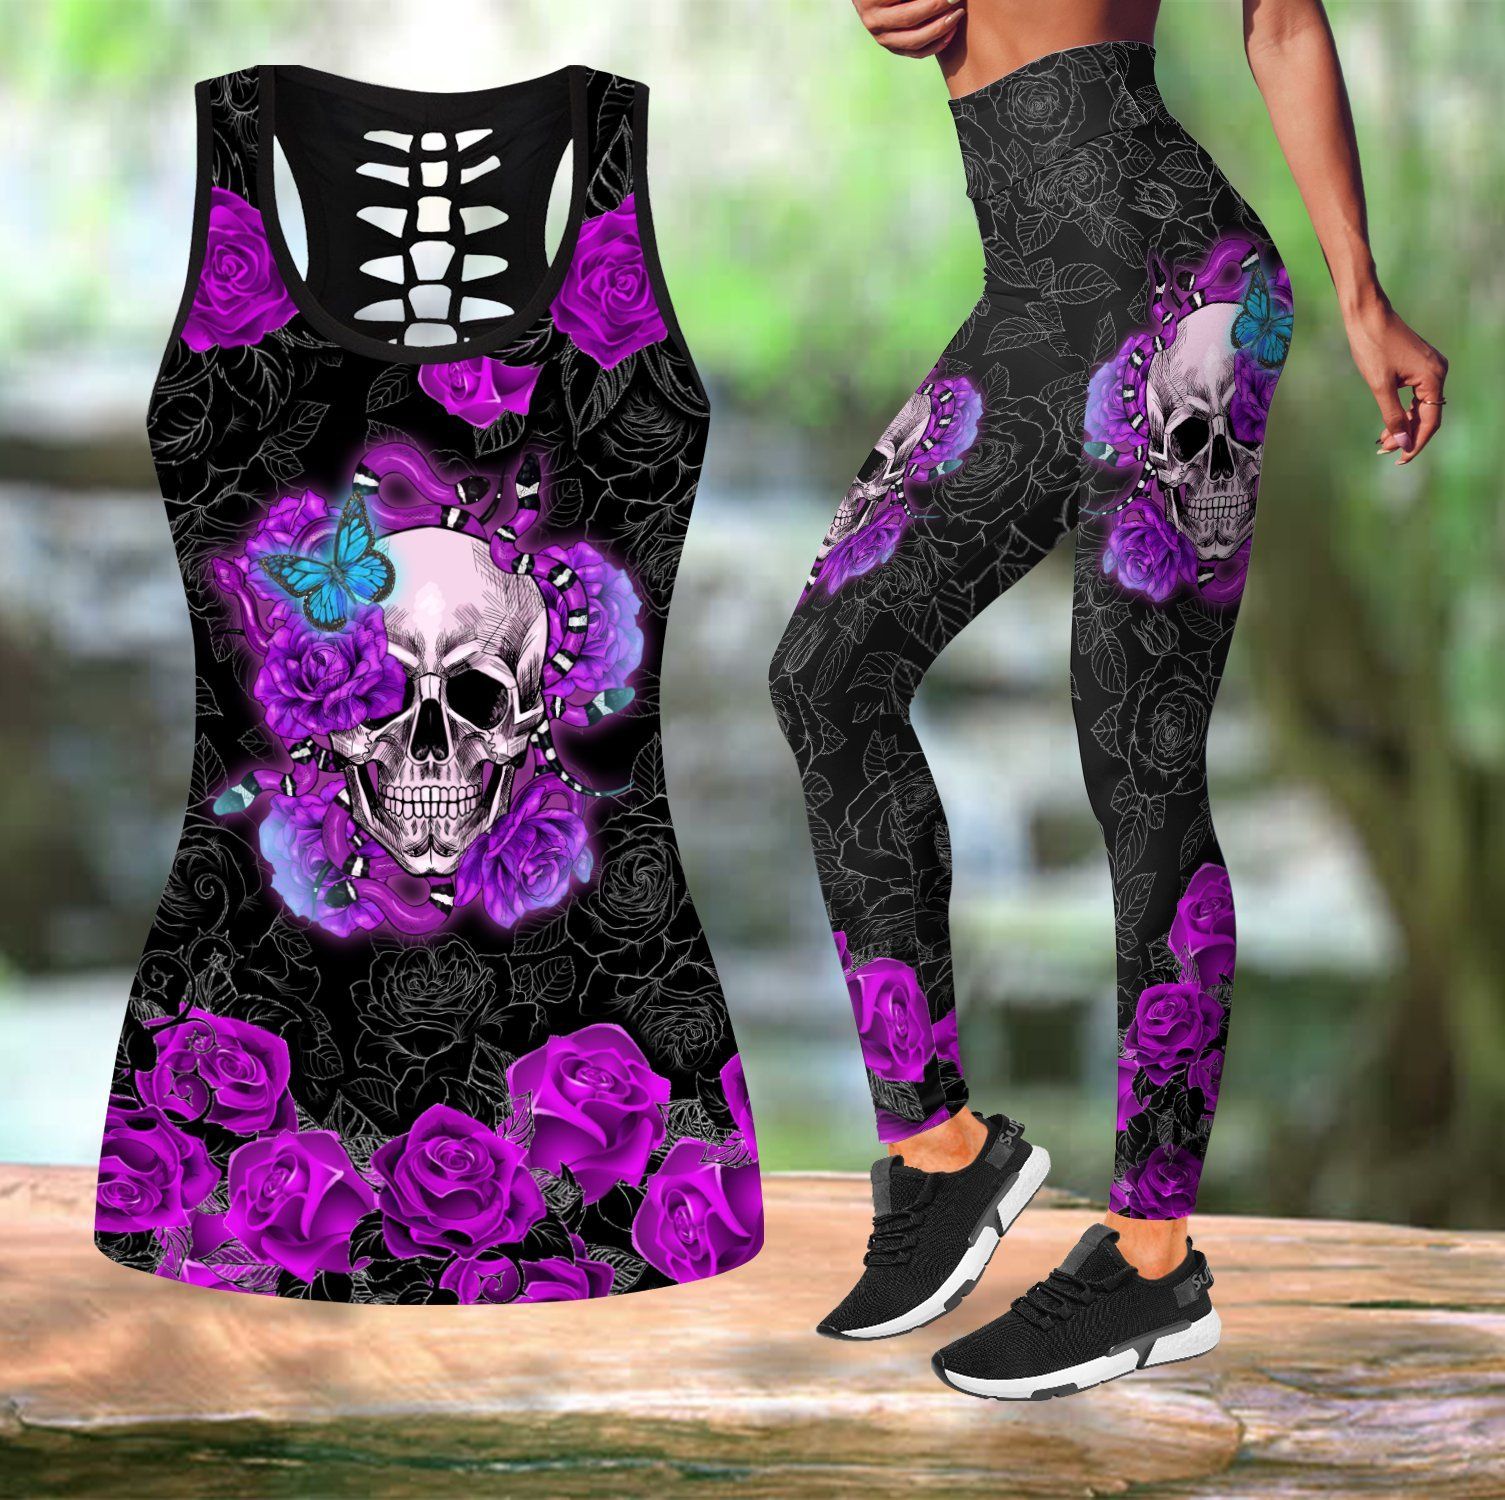 Skull Rose tanktop & legging outfit for women